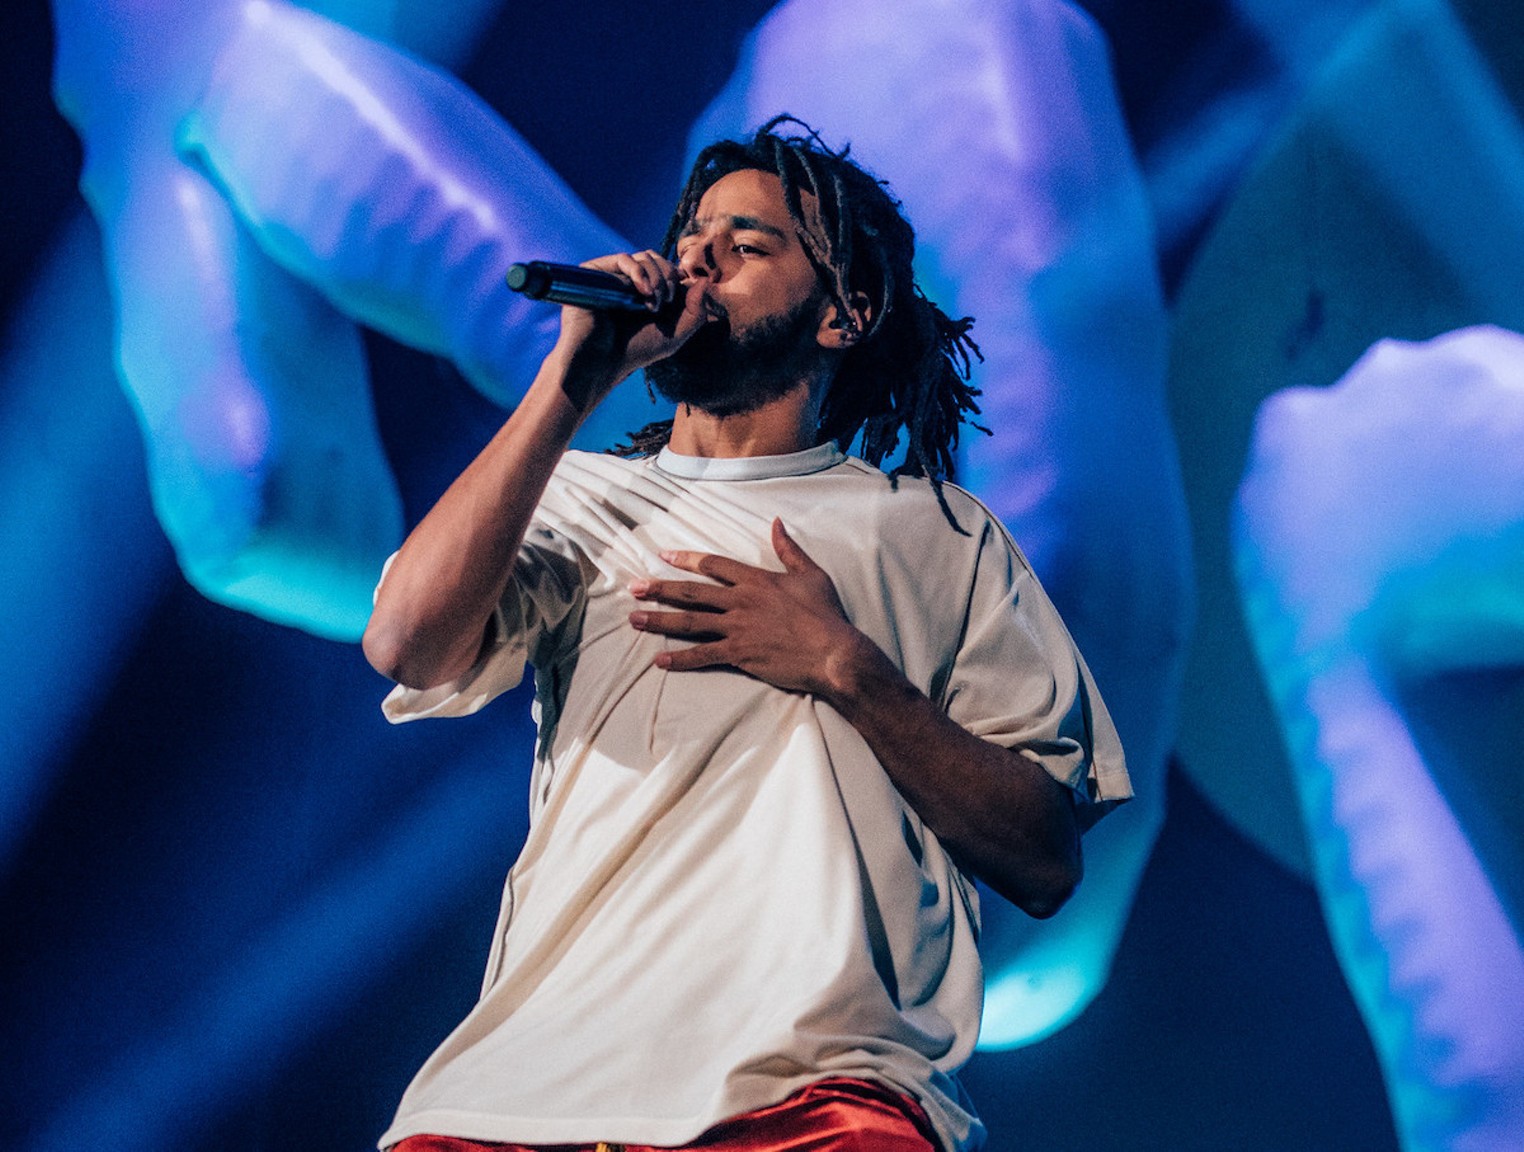 J. Cole Kicks Off His OffSeason Tour in Miami Miami New Times